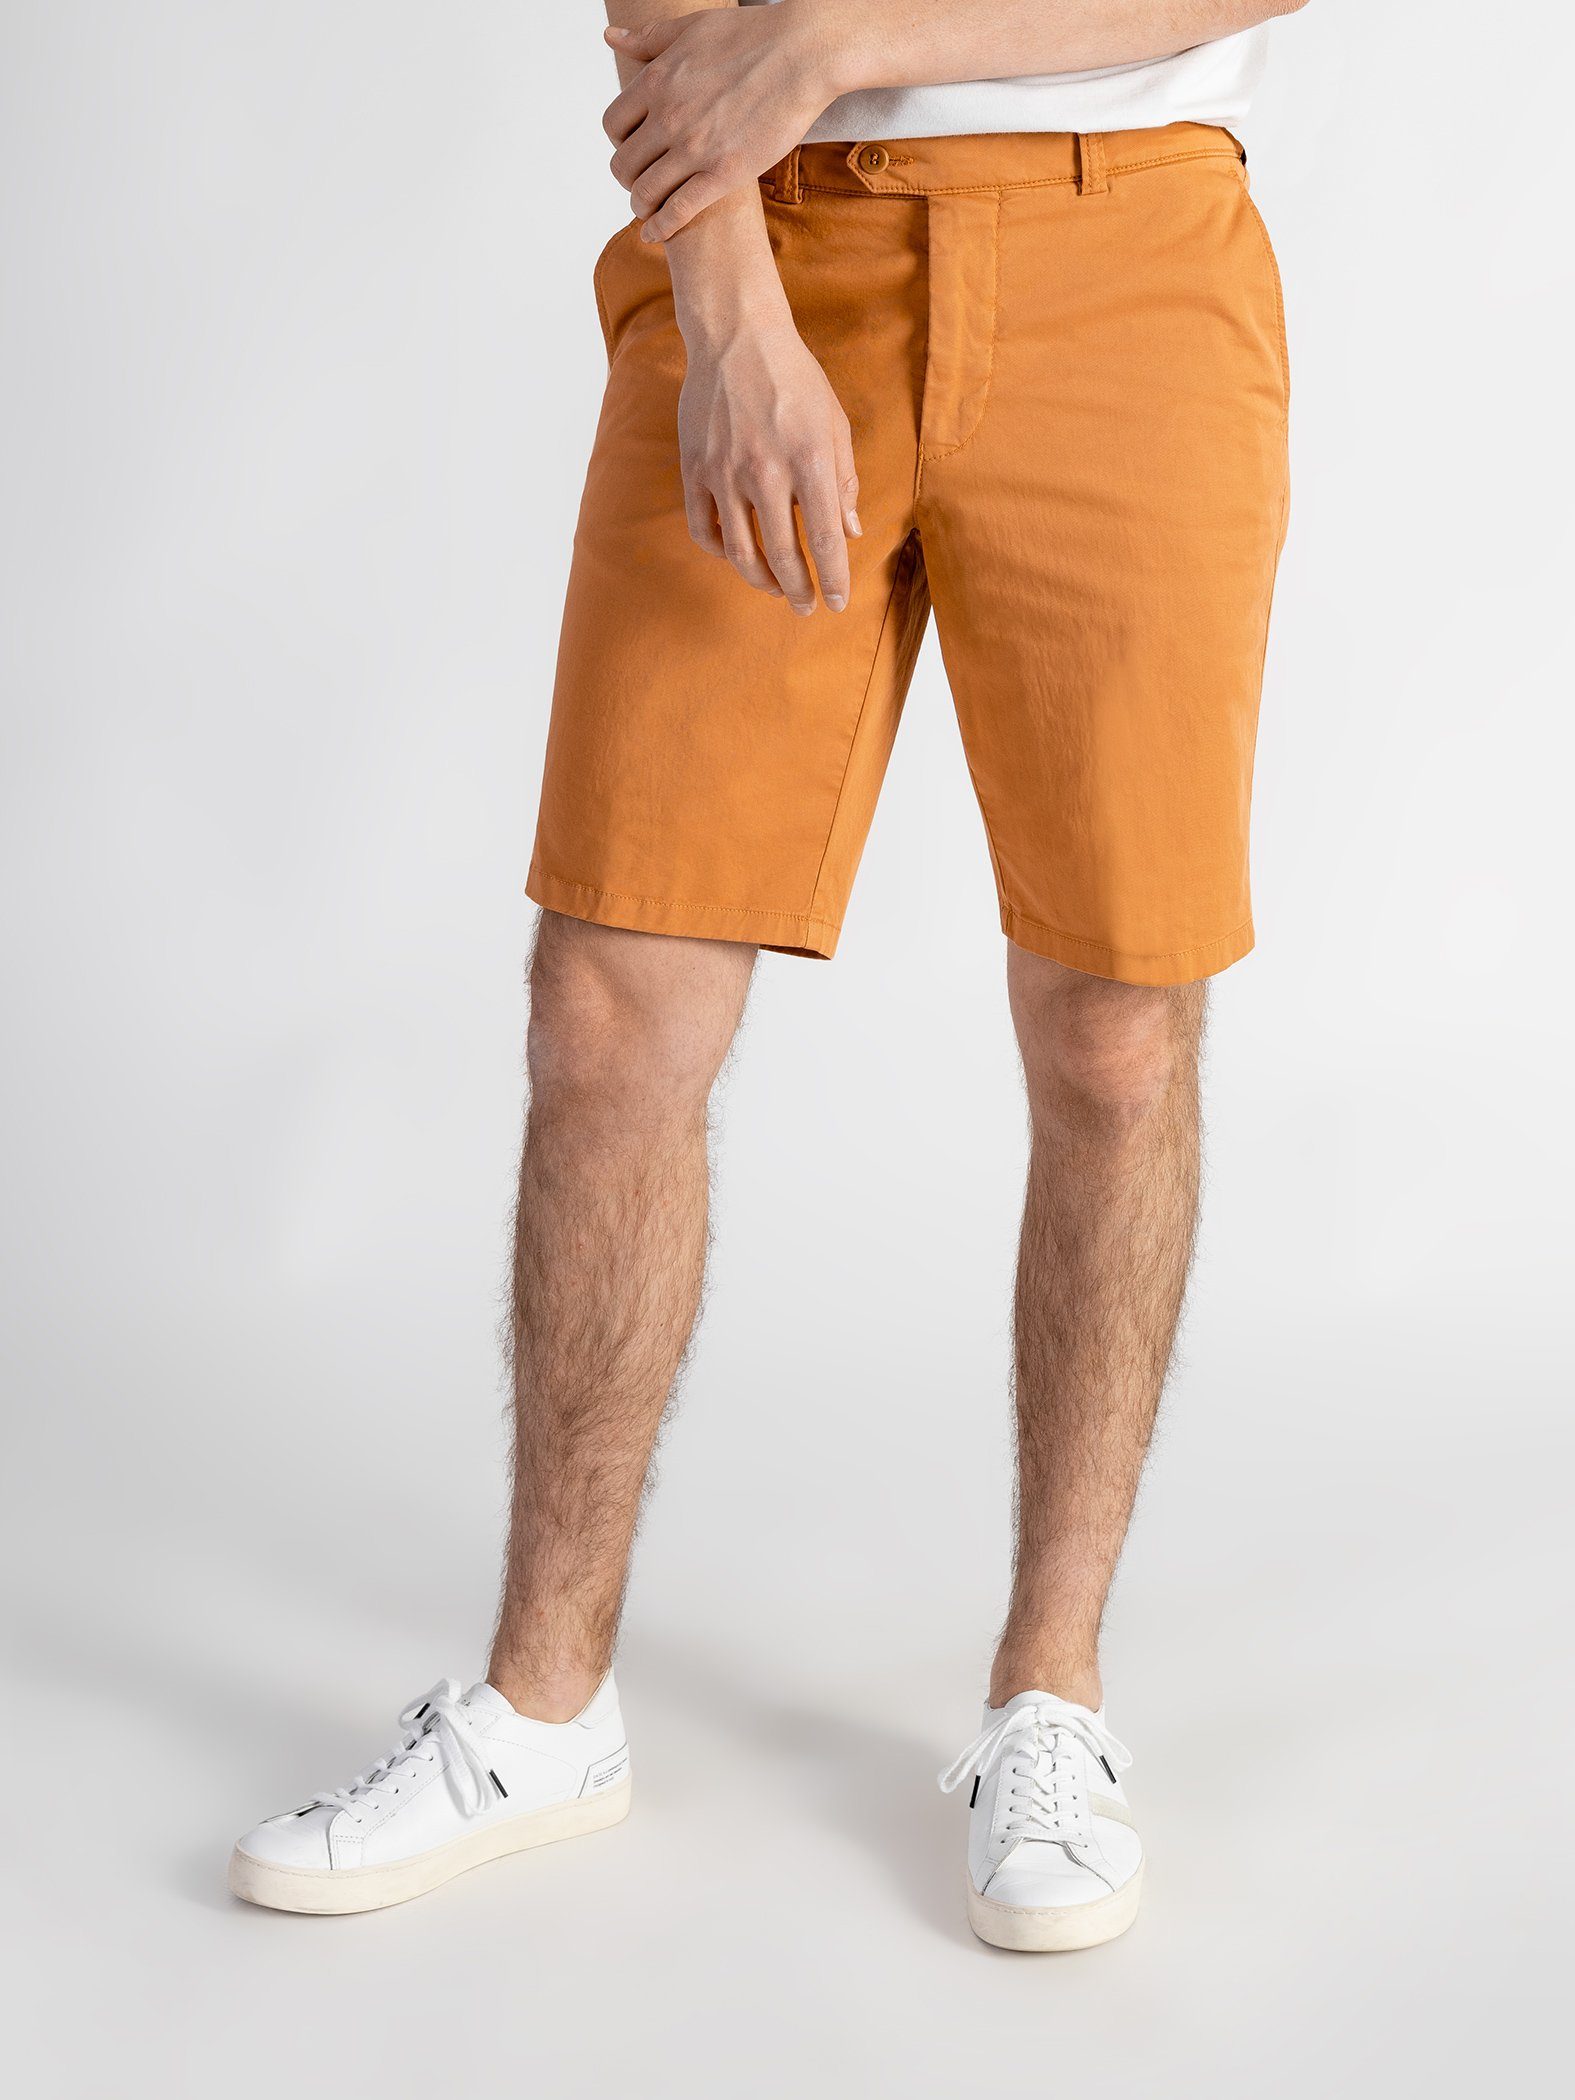 elastischem Shorts Orange Shorts TwoMates GOTS-zertifiziert mit Farbauswahl, Bund,